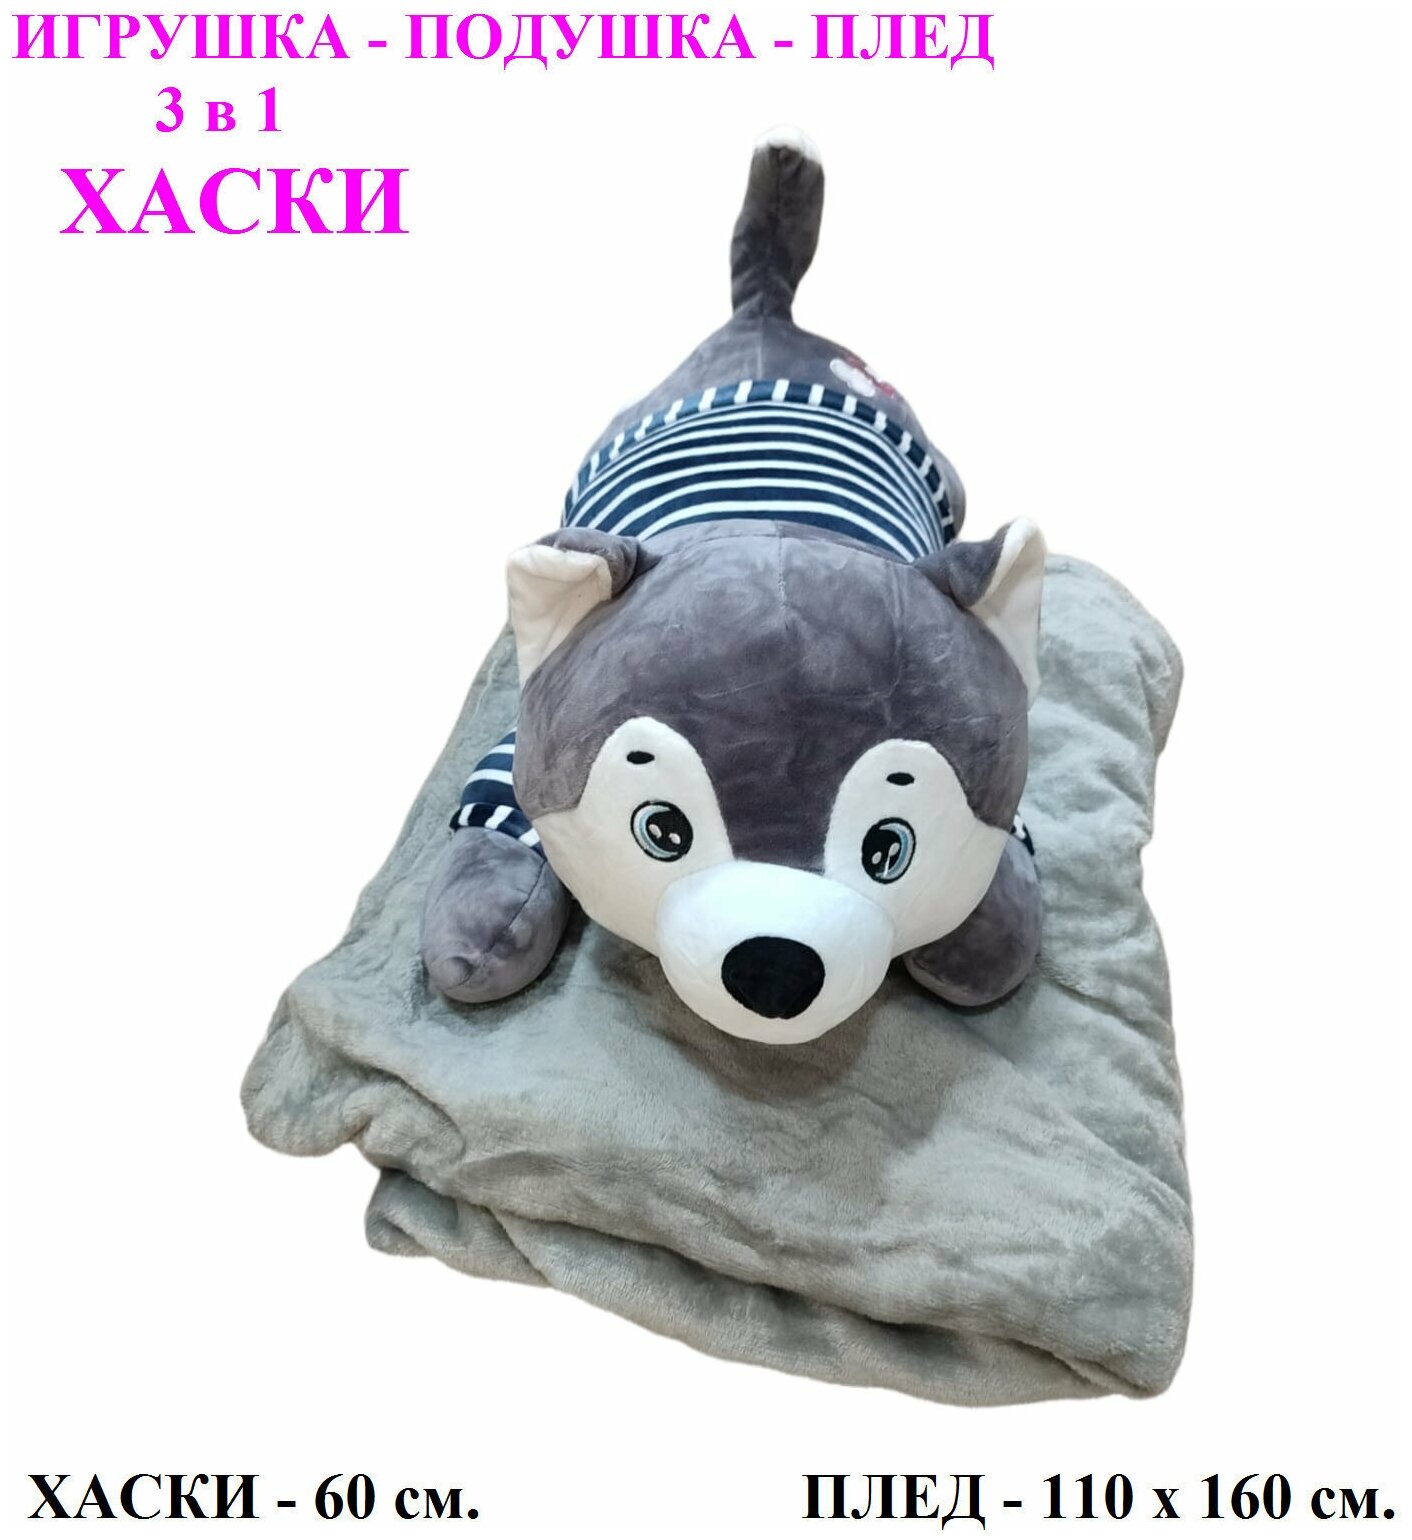 Мягкая игрушка Хаски с пледом 3 в 1 лежачий серый. 60 см. Плюшевая Игрушка - подушка Собака 3 в 1 с пледом (одеялом) внутри.